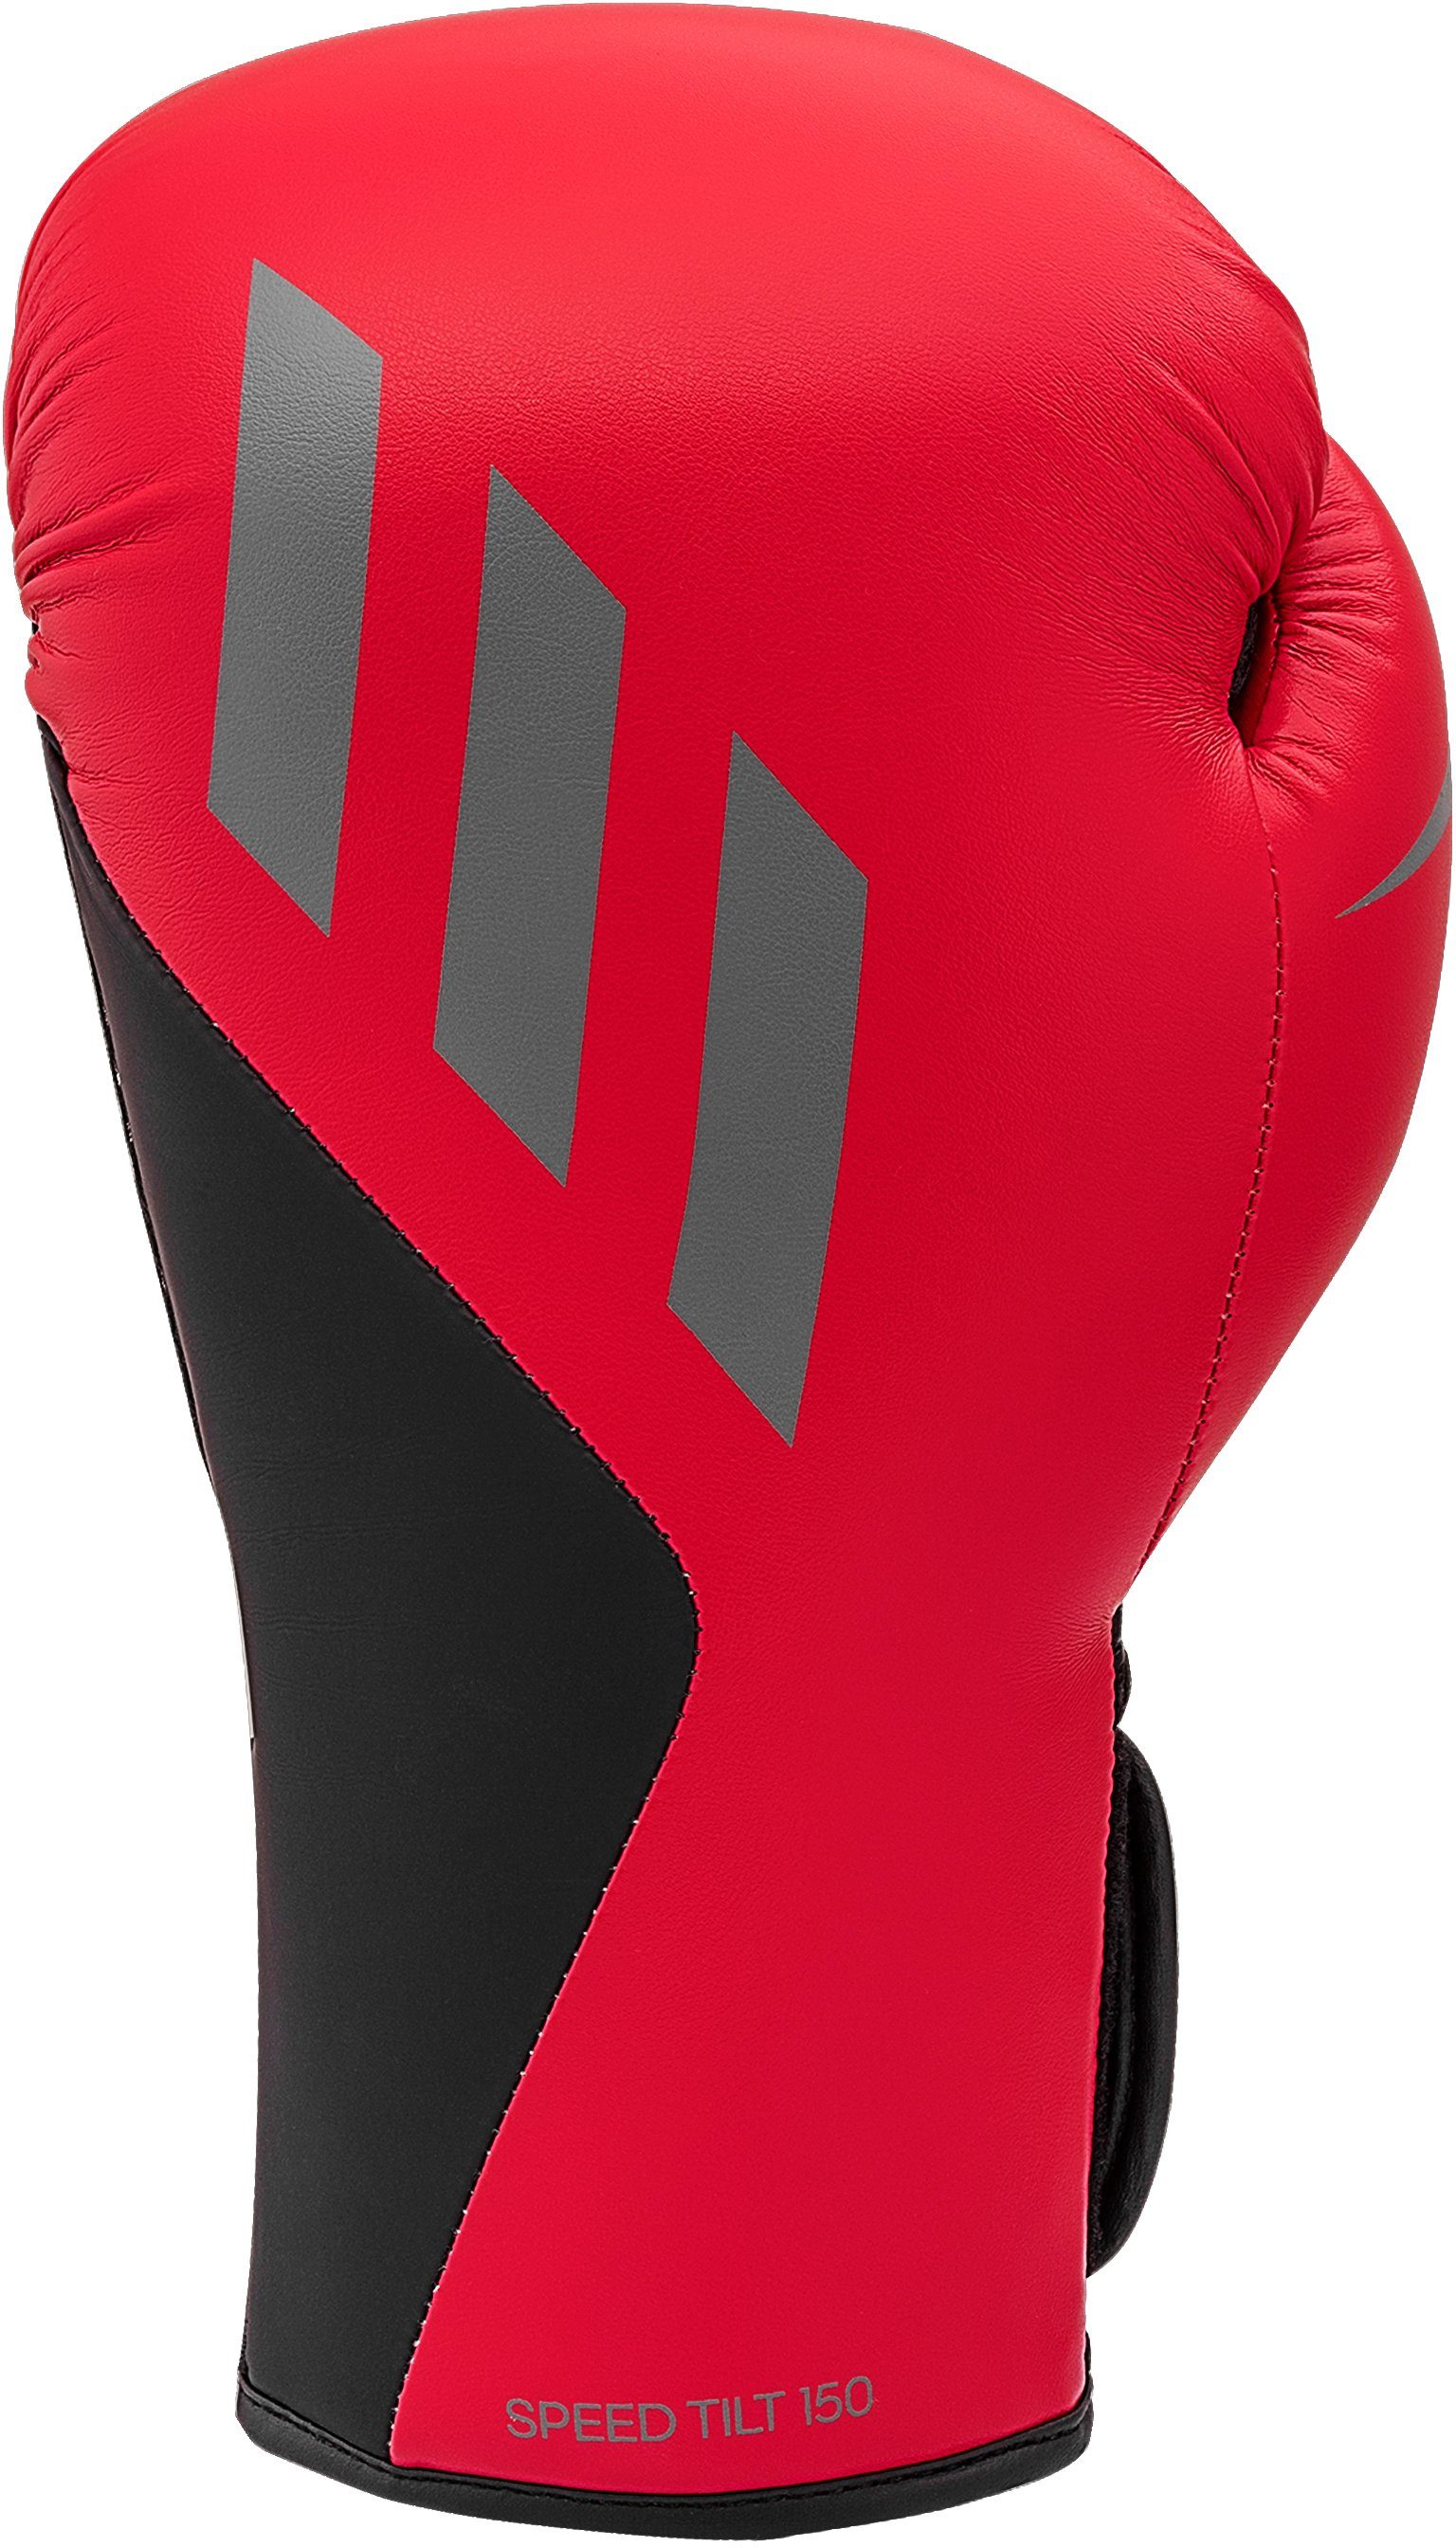 Tilt Speed Boxhandschuhe adidas 150 Performance rot/schwarz